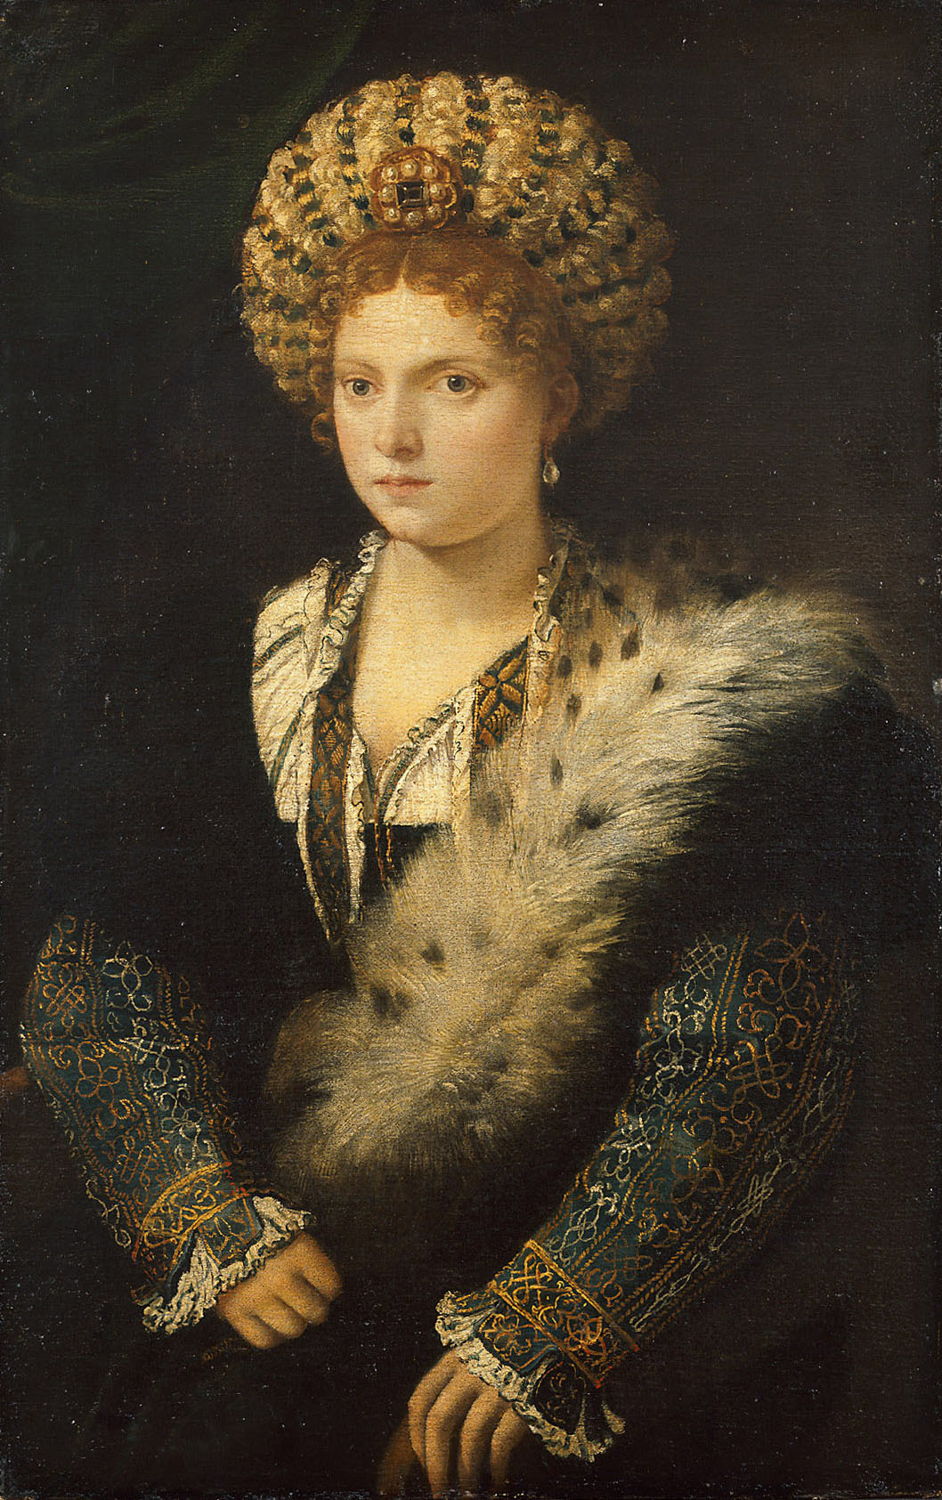 Titiaan, Portret van Isabella d’Este, schilderij, 
Wenen, Kunsthistorisches Museum